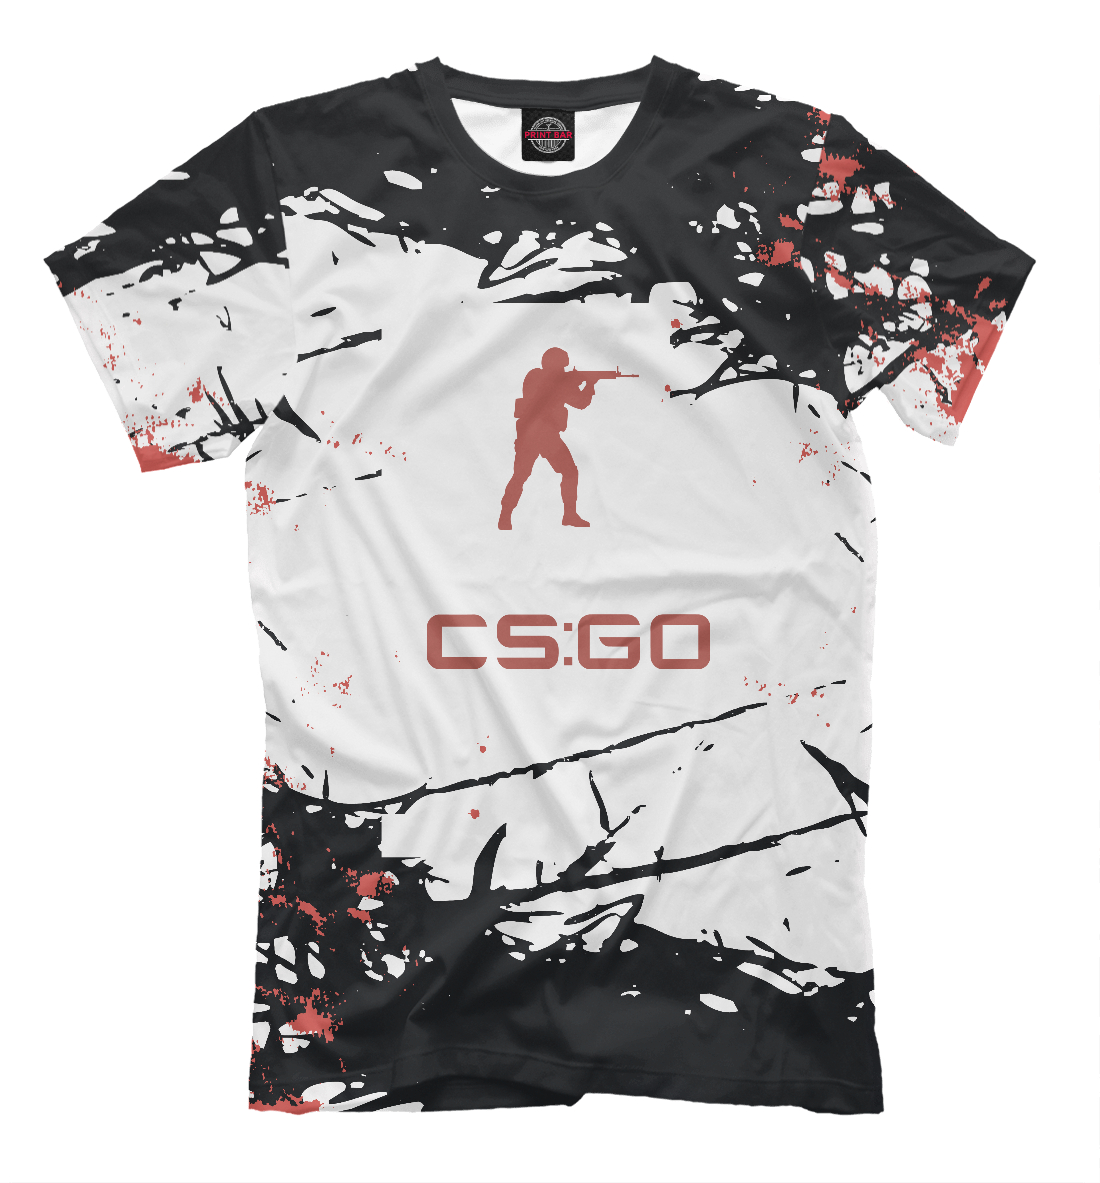 Мужская футболка Counter-Strike (cs:go) (коллекции Counter-Strike) за 799 ₽купить в интернет-магазине Print Bar (COU-135251) ✌